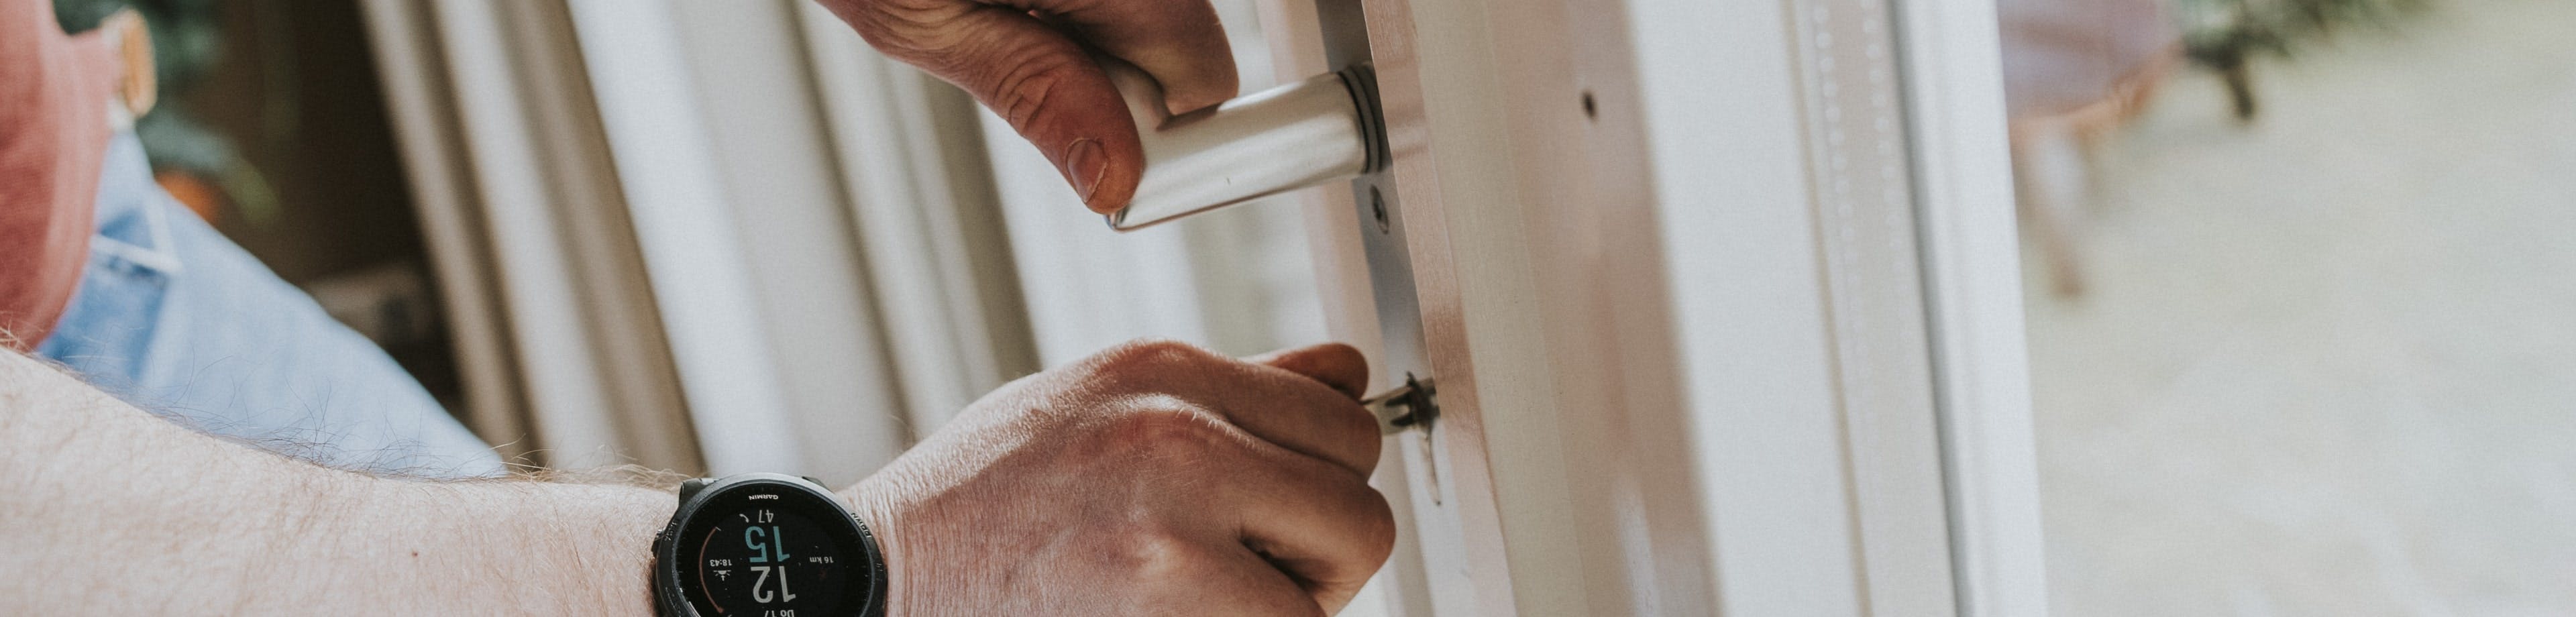 De handen van een persoon; de linkerhand pakt een deurklink vast, de rechterhand steekt een sleutel in het slot daar direct onder.